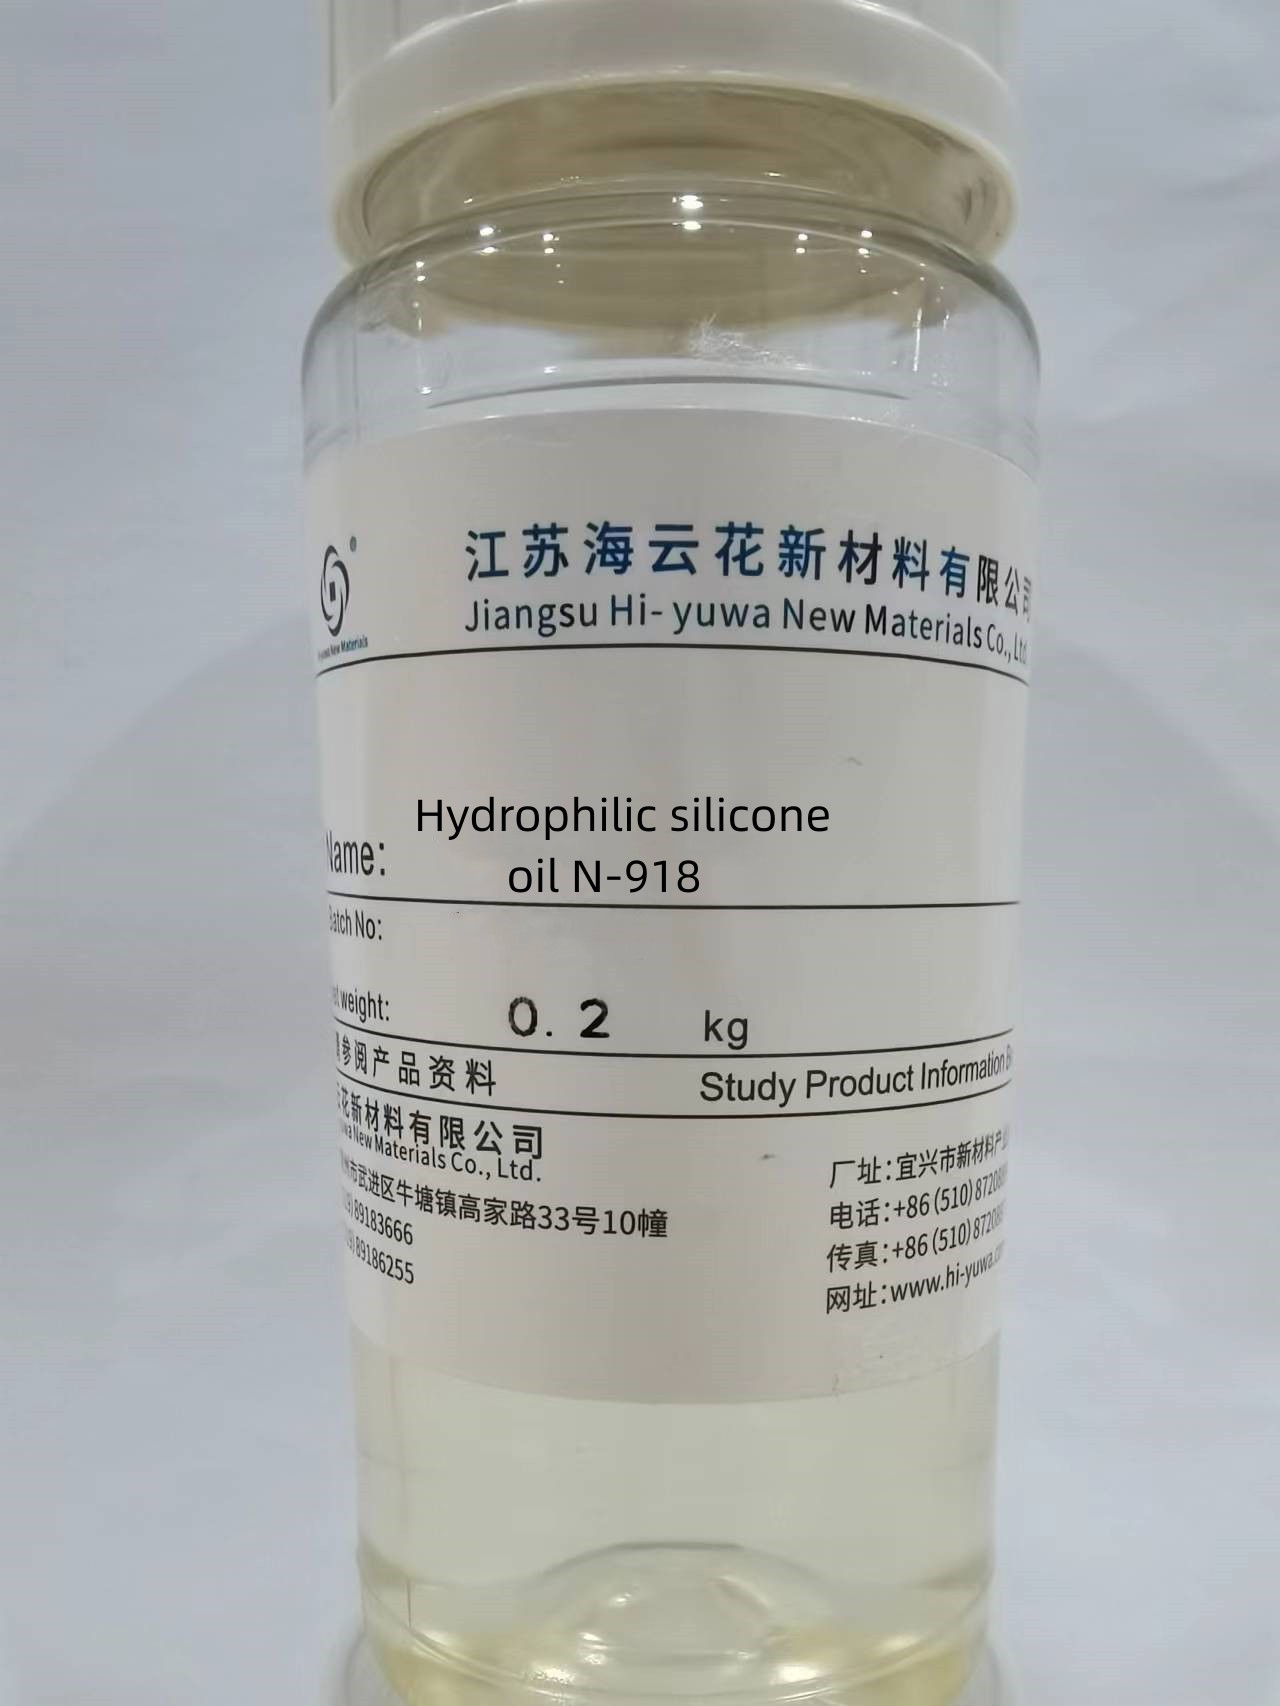 Hydrophilic silicone oil N-918